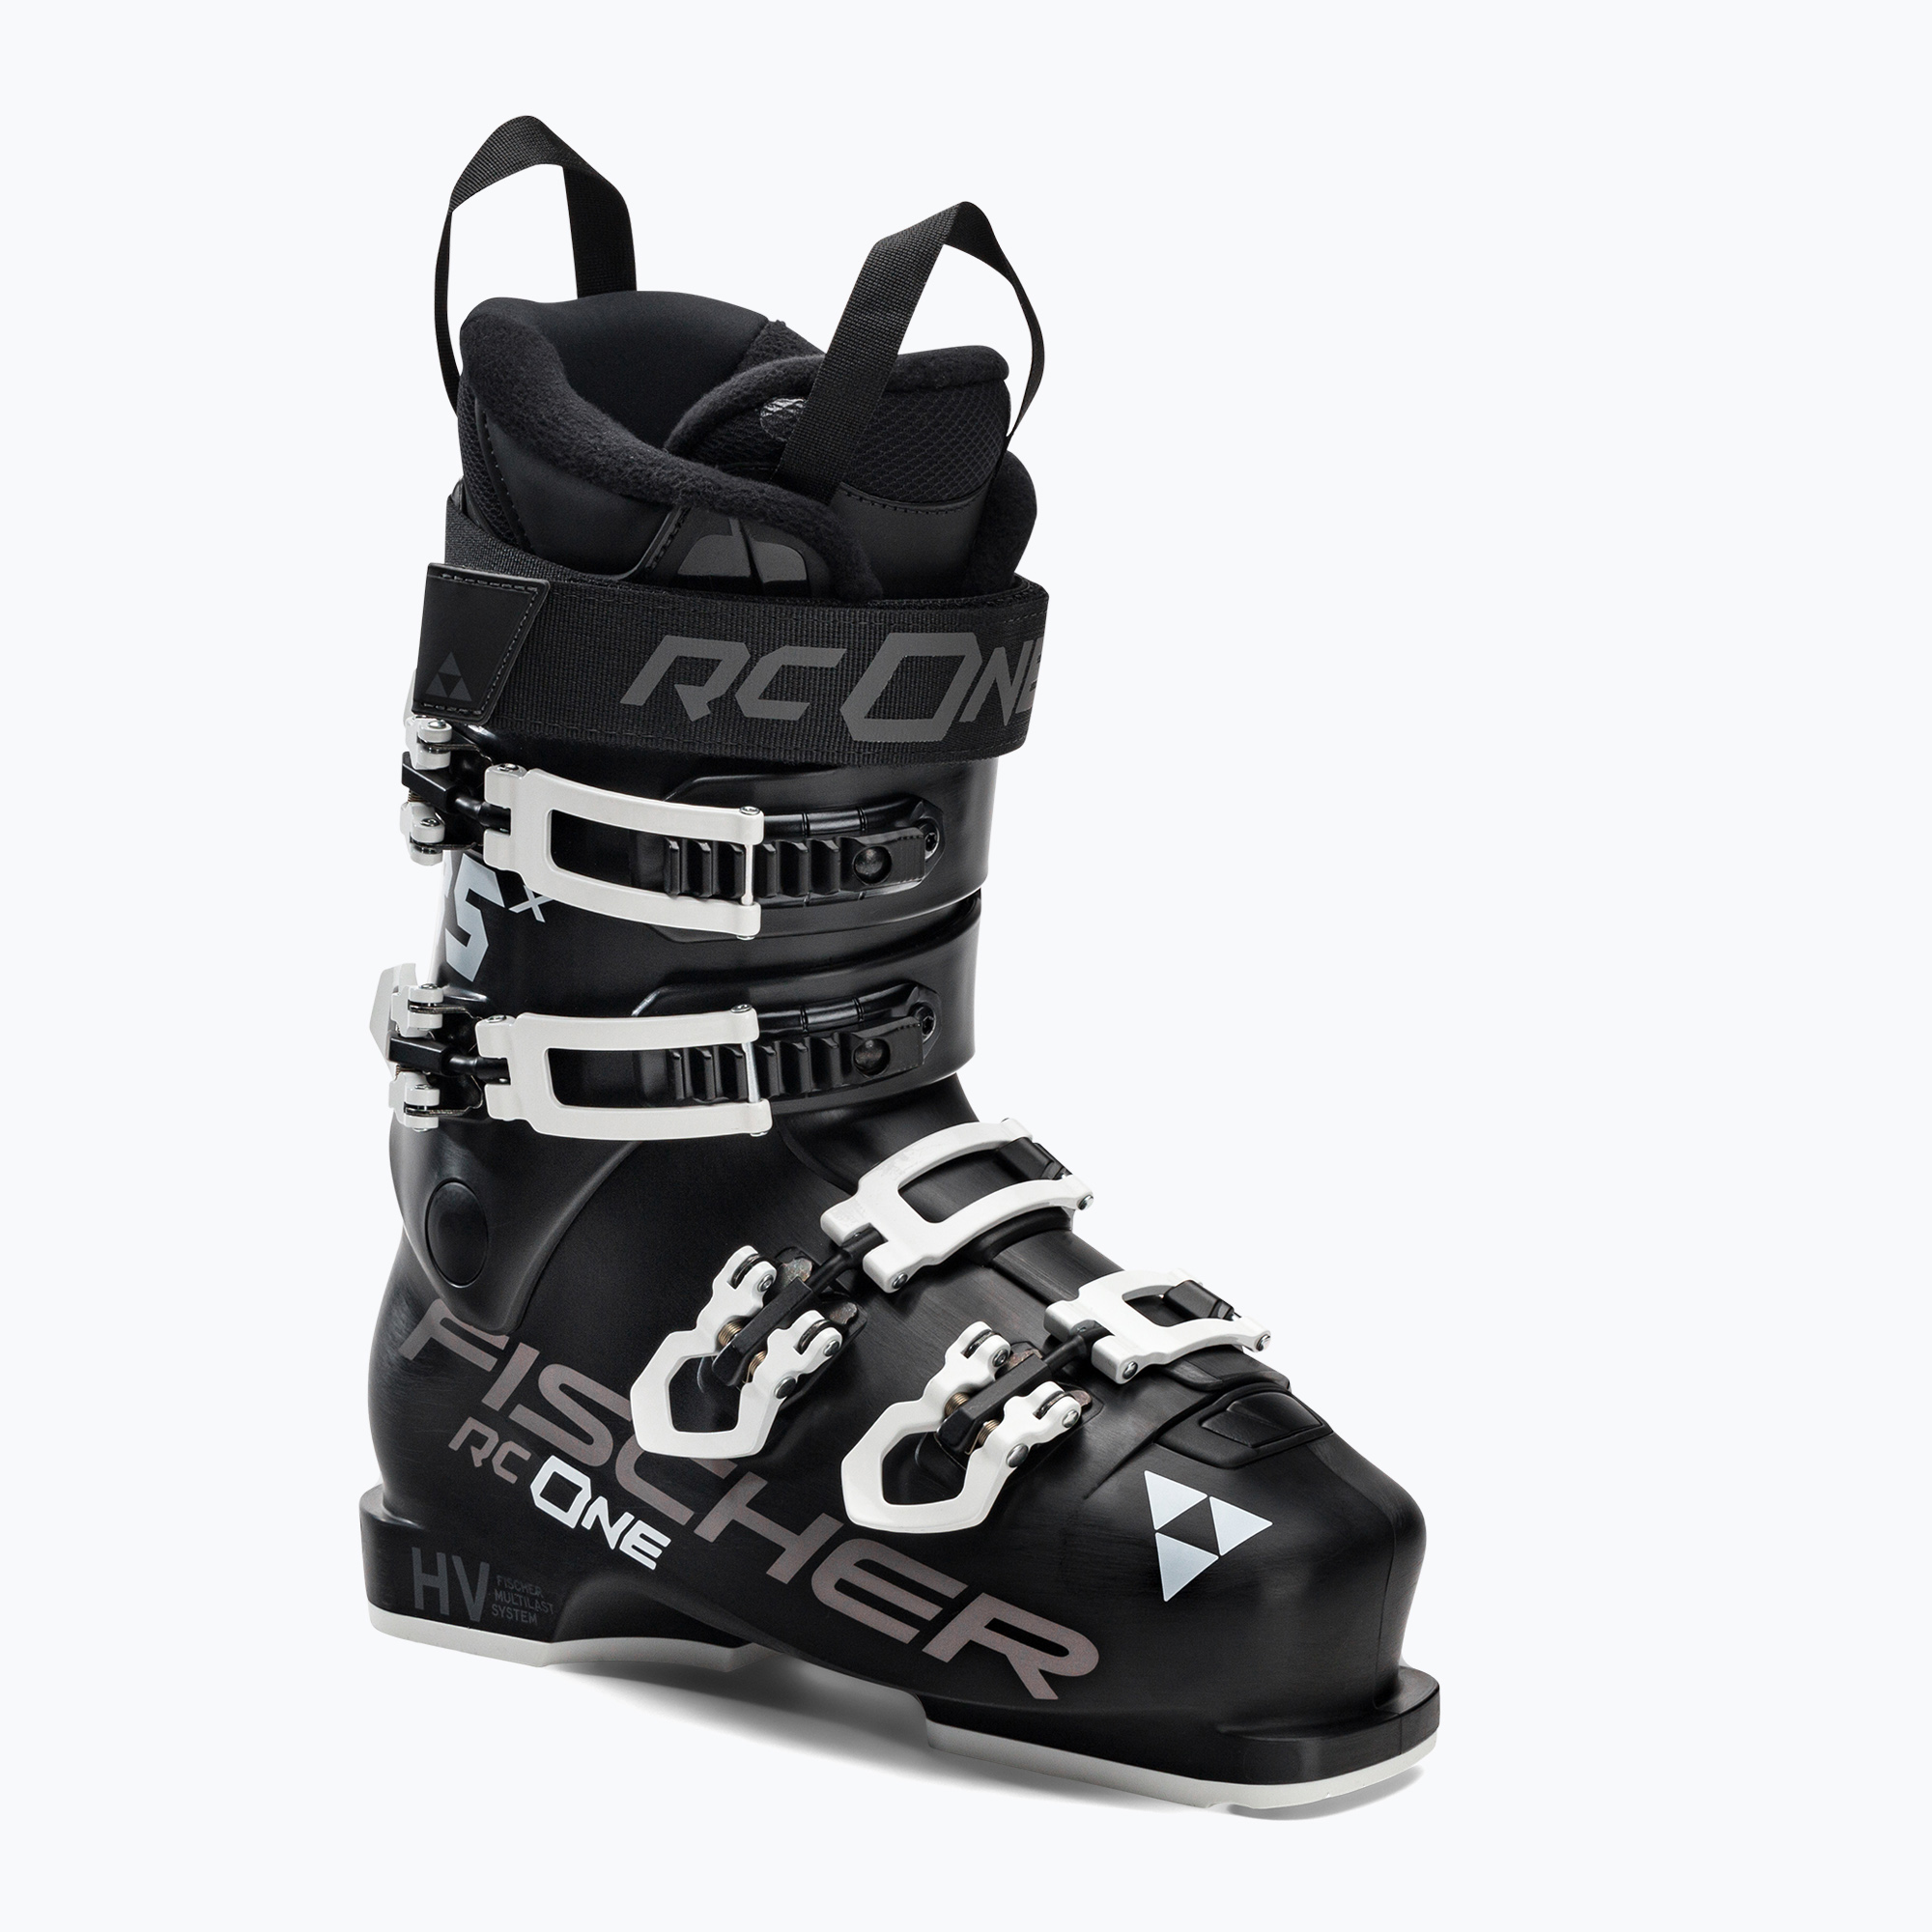 Dámske lyžiarske topánky Fischer RC ONE X 85 čierne U3722